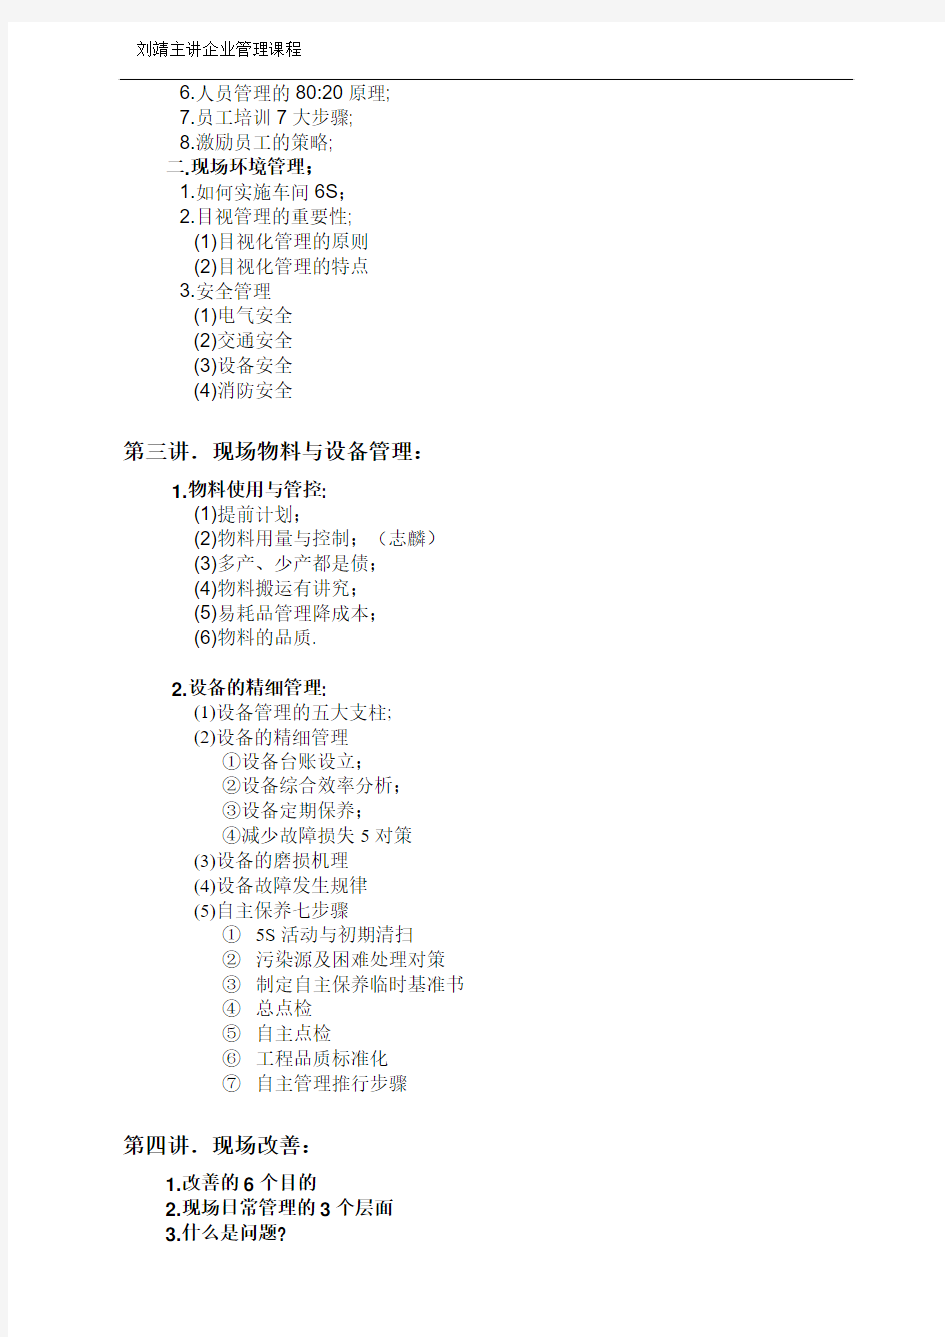 刘靖——现场管理与现场改善 Word 文档 (2)